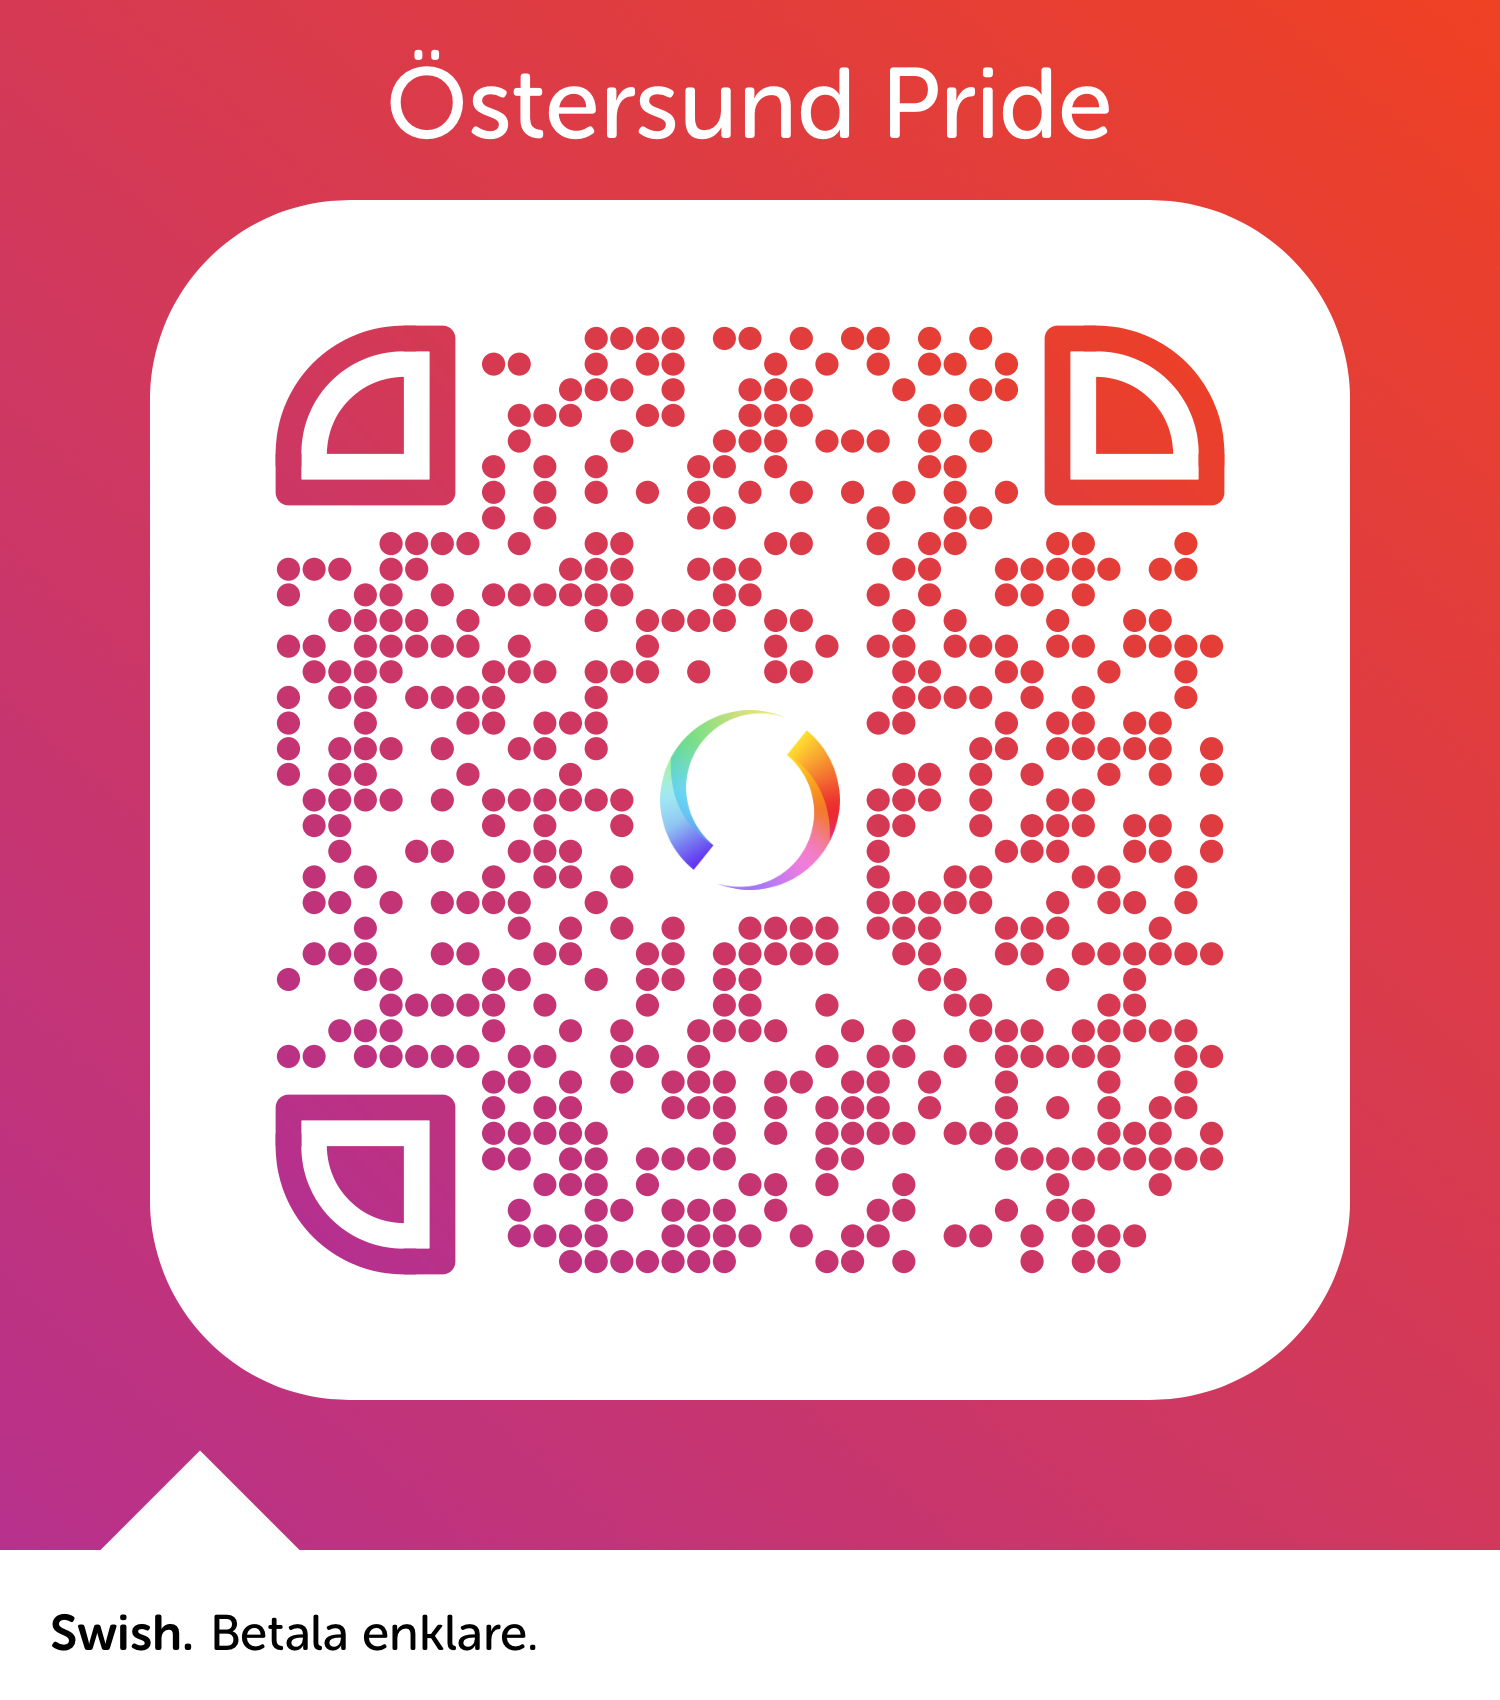 Volontär – Östersund Staaren Pride 2022